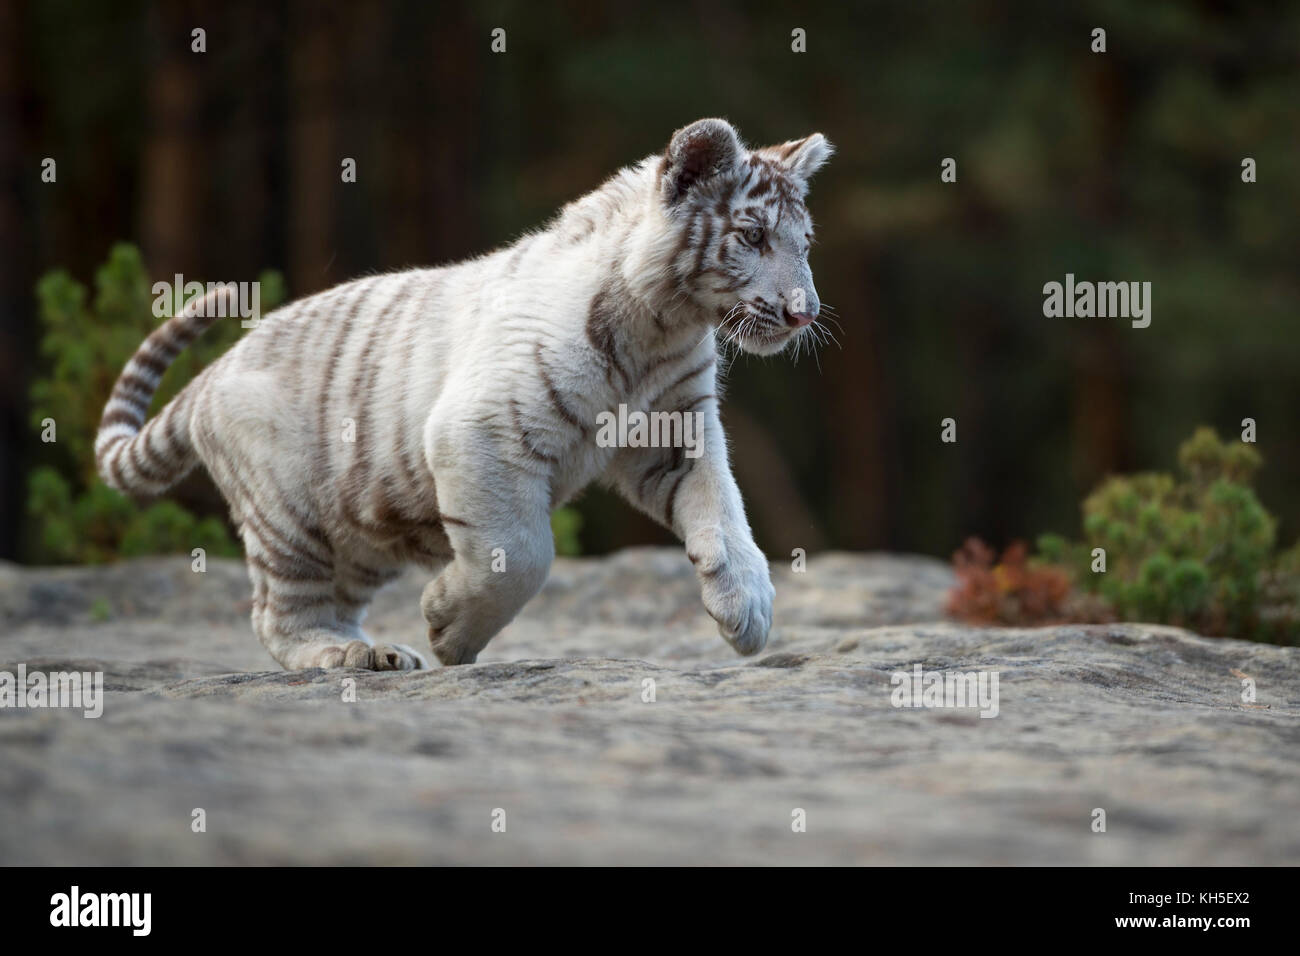 Bengaler Tiger ( Panthera tigris ), weiß, junges Tier, heranwachsen, laufen, über Felsen am Waldrand springen, voller Freude. Stockfoto